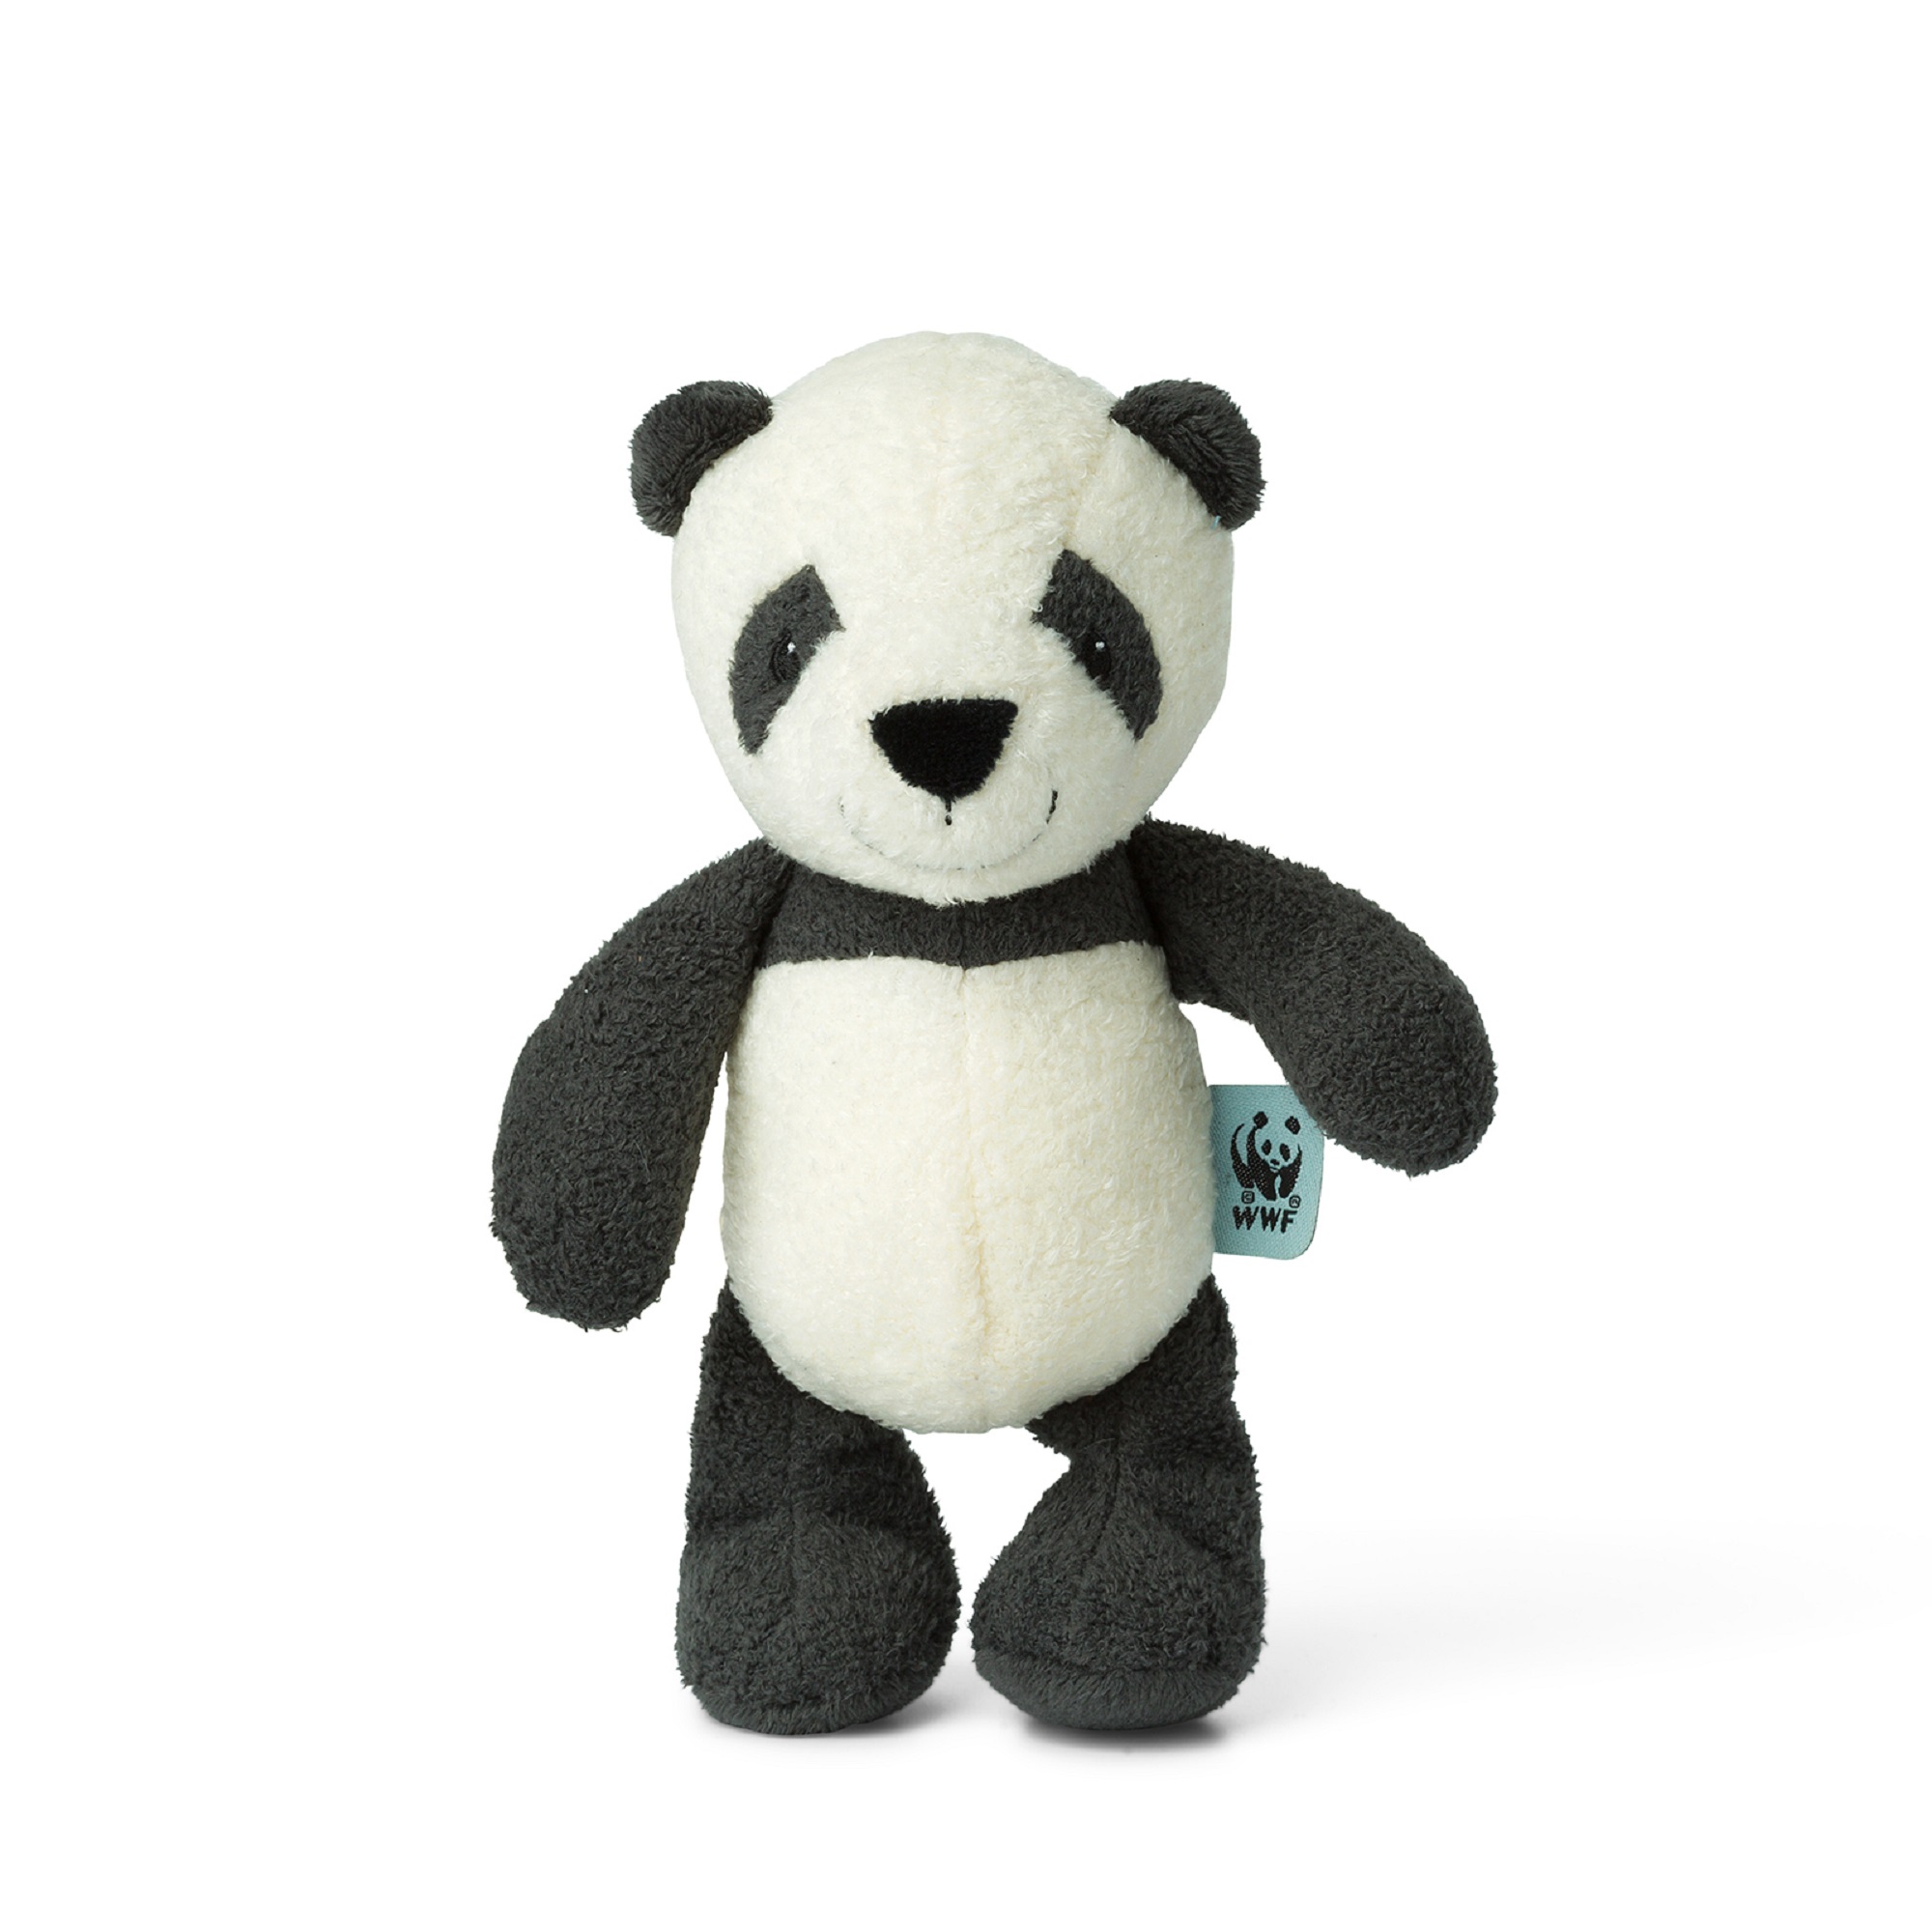 WWF - Peluche Panda - Peluche Réaliste avec de Nombreux Détails